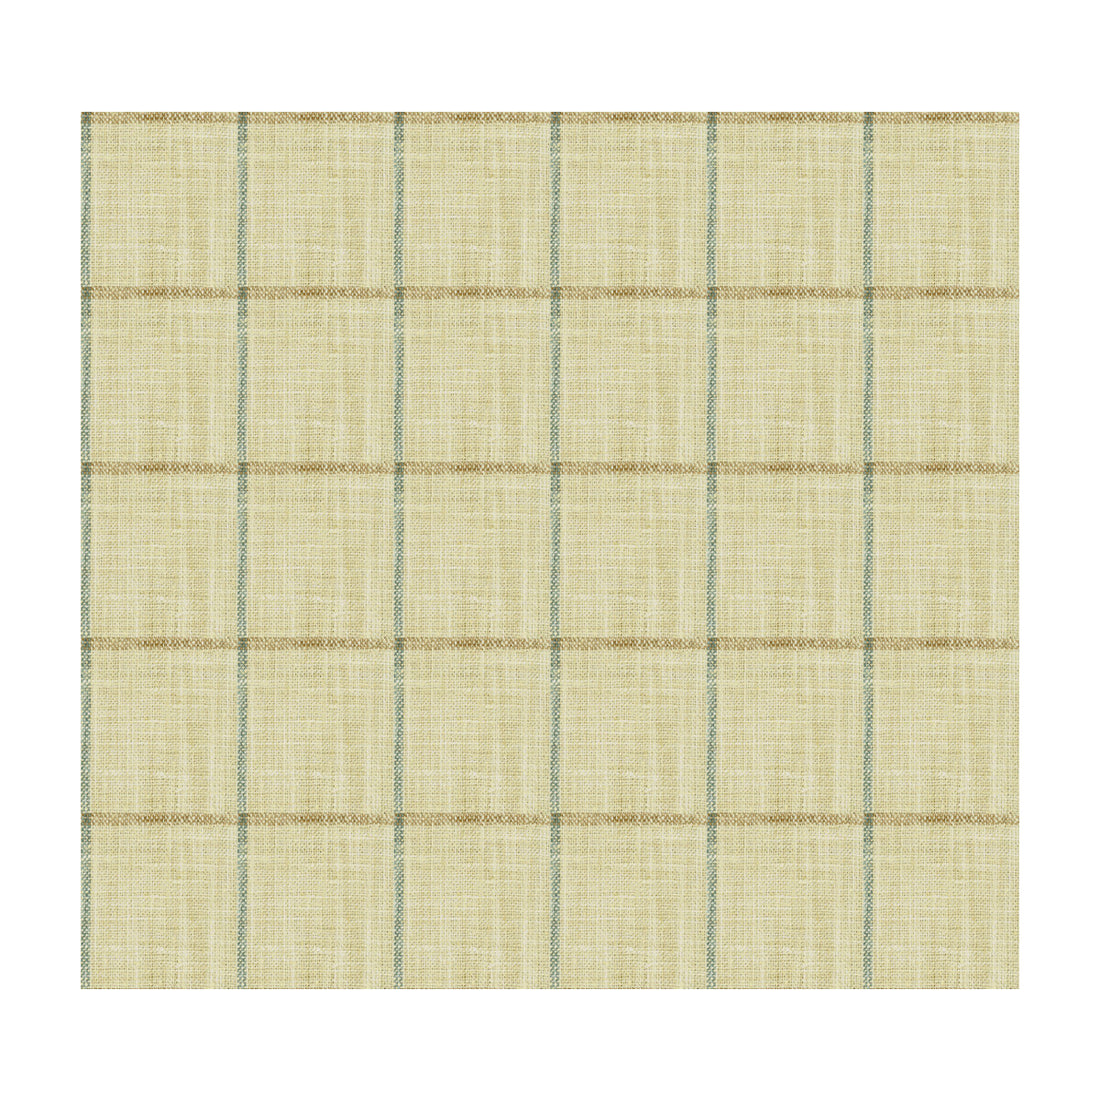 Kravet Basics fabric in 34085-1516 color - pattern 34085.1516.0 - by Kravet Basics